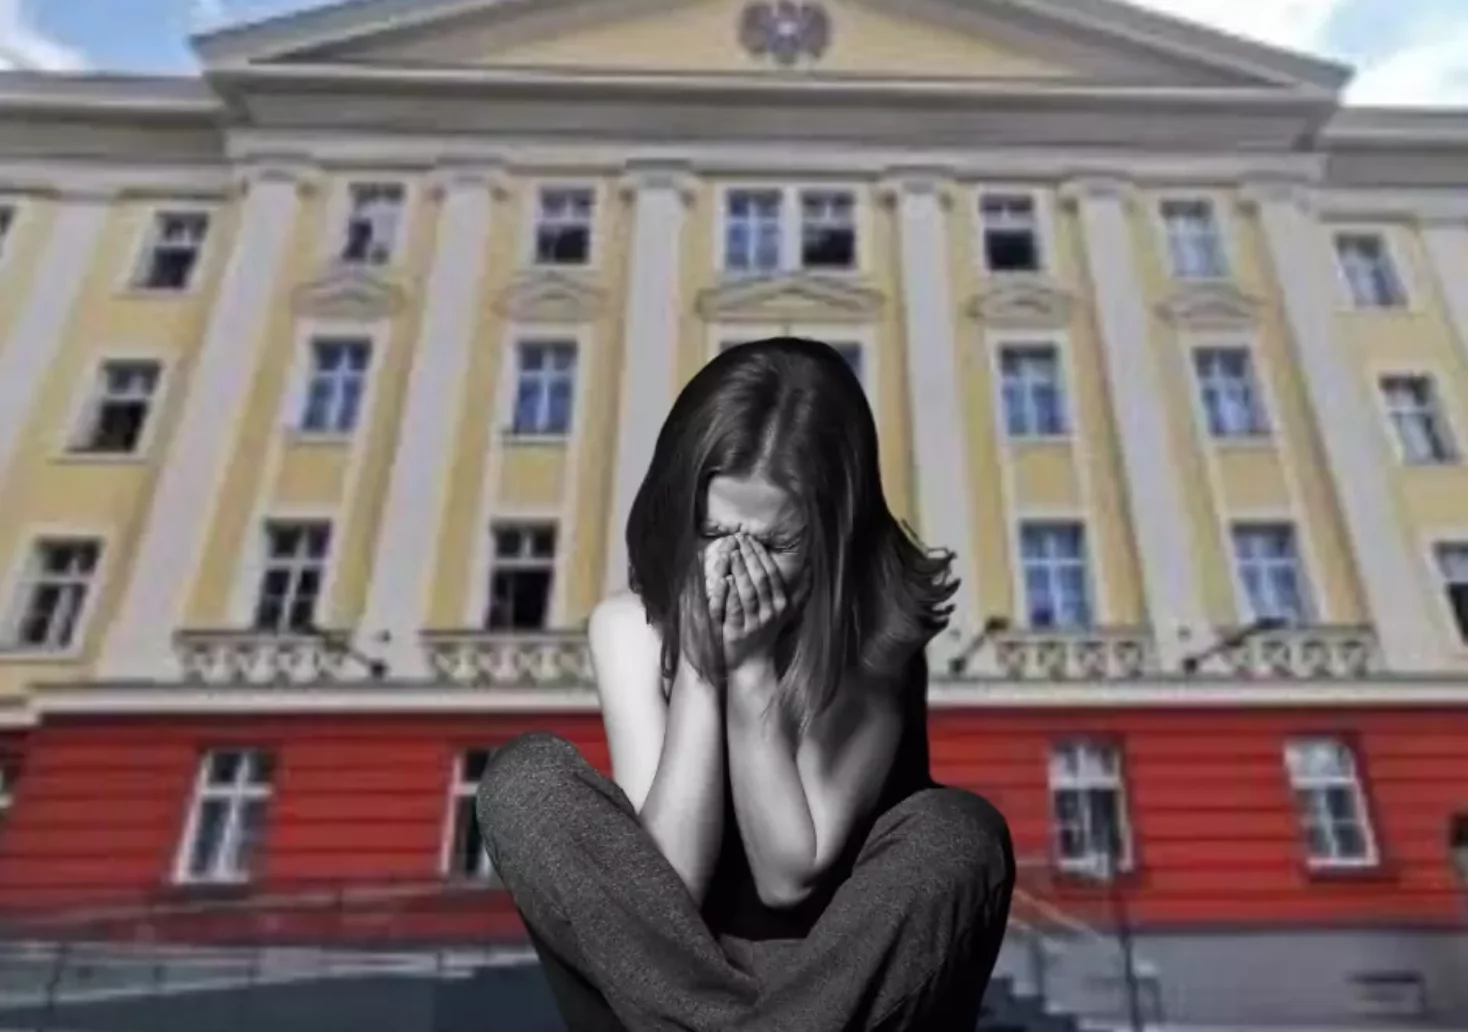 Bild auf 5min.at zeigt eine Frau weinend am Boden hockend.